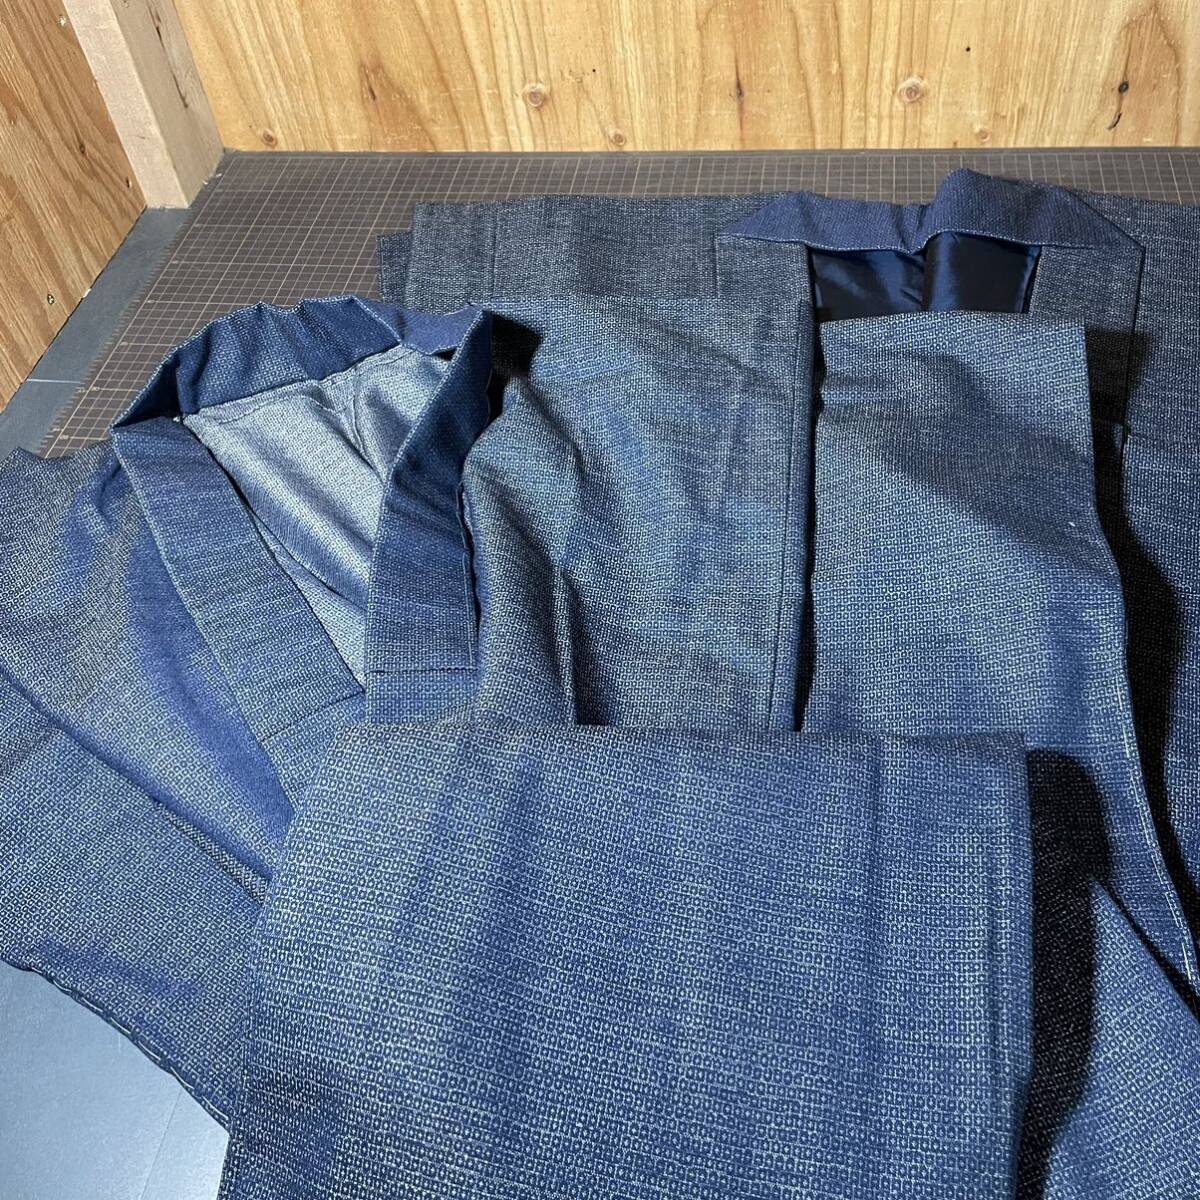 [10289] мужской кимоно / перо ткань ансамбль 10 пункт совместно мужской кимоно японский костюм кимоно мужчина . японская одежда casual переделка мир рисунок простой темно-синий индиго цвет 